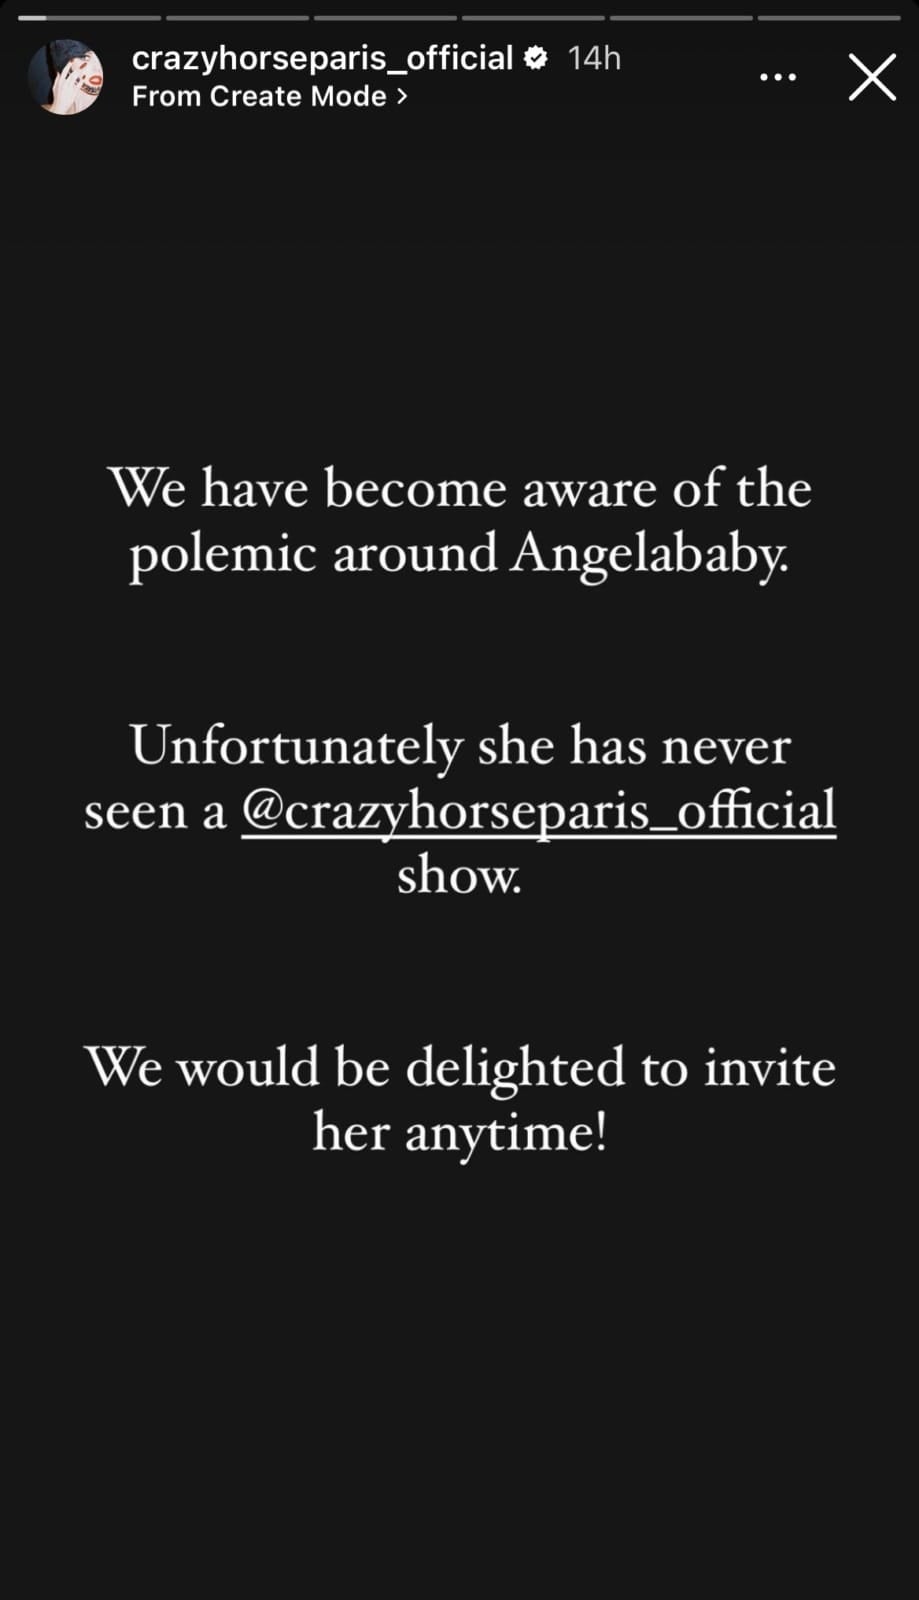 แองเจลล่าเบบี้ ไม่ได้เข้าชมการแสดงของลิซ่าที่ crazy horse paris